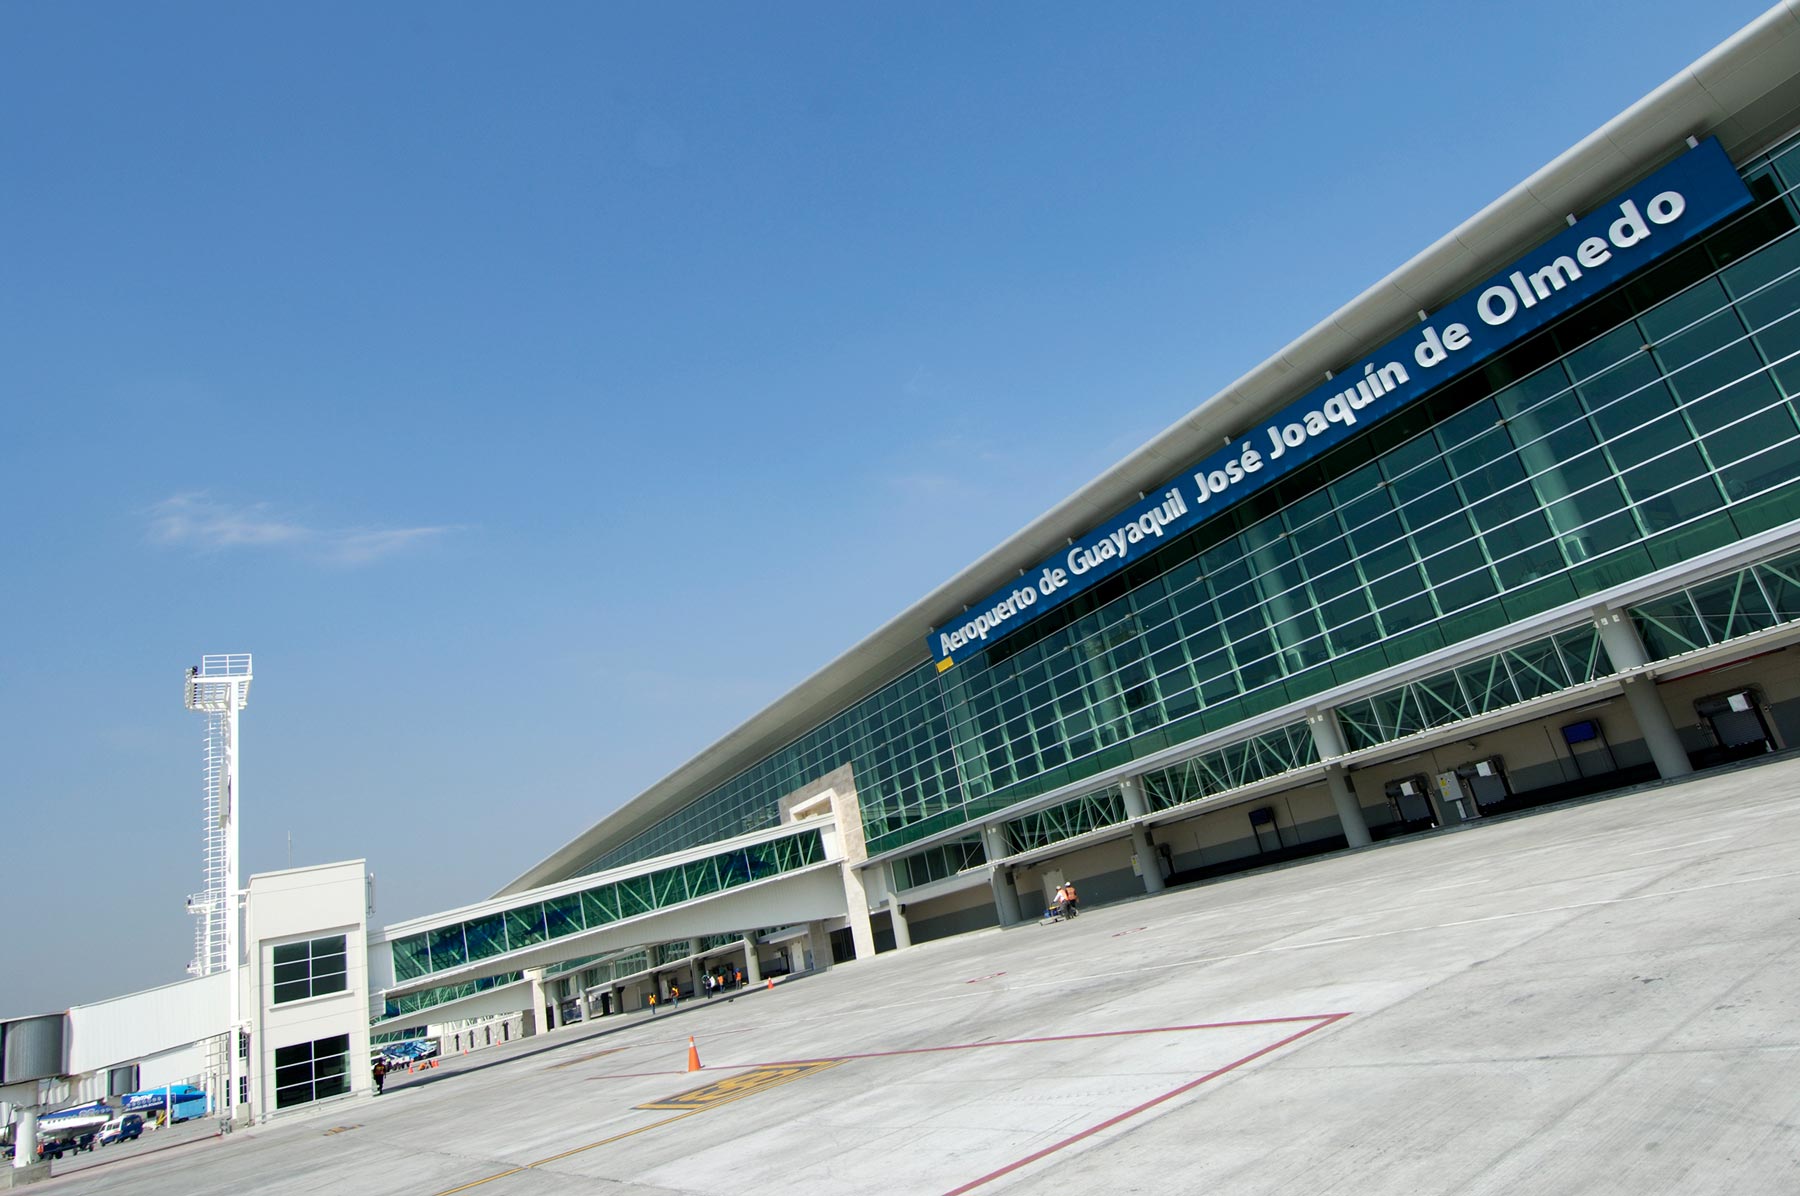 Aeropuerto Internacional de Guayaquil